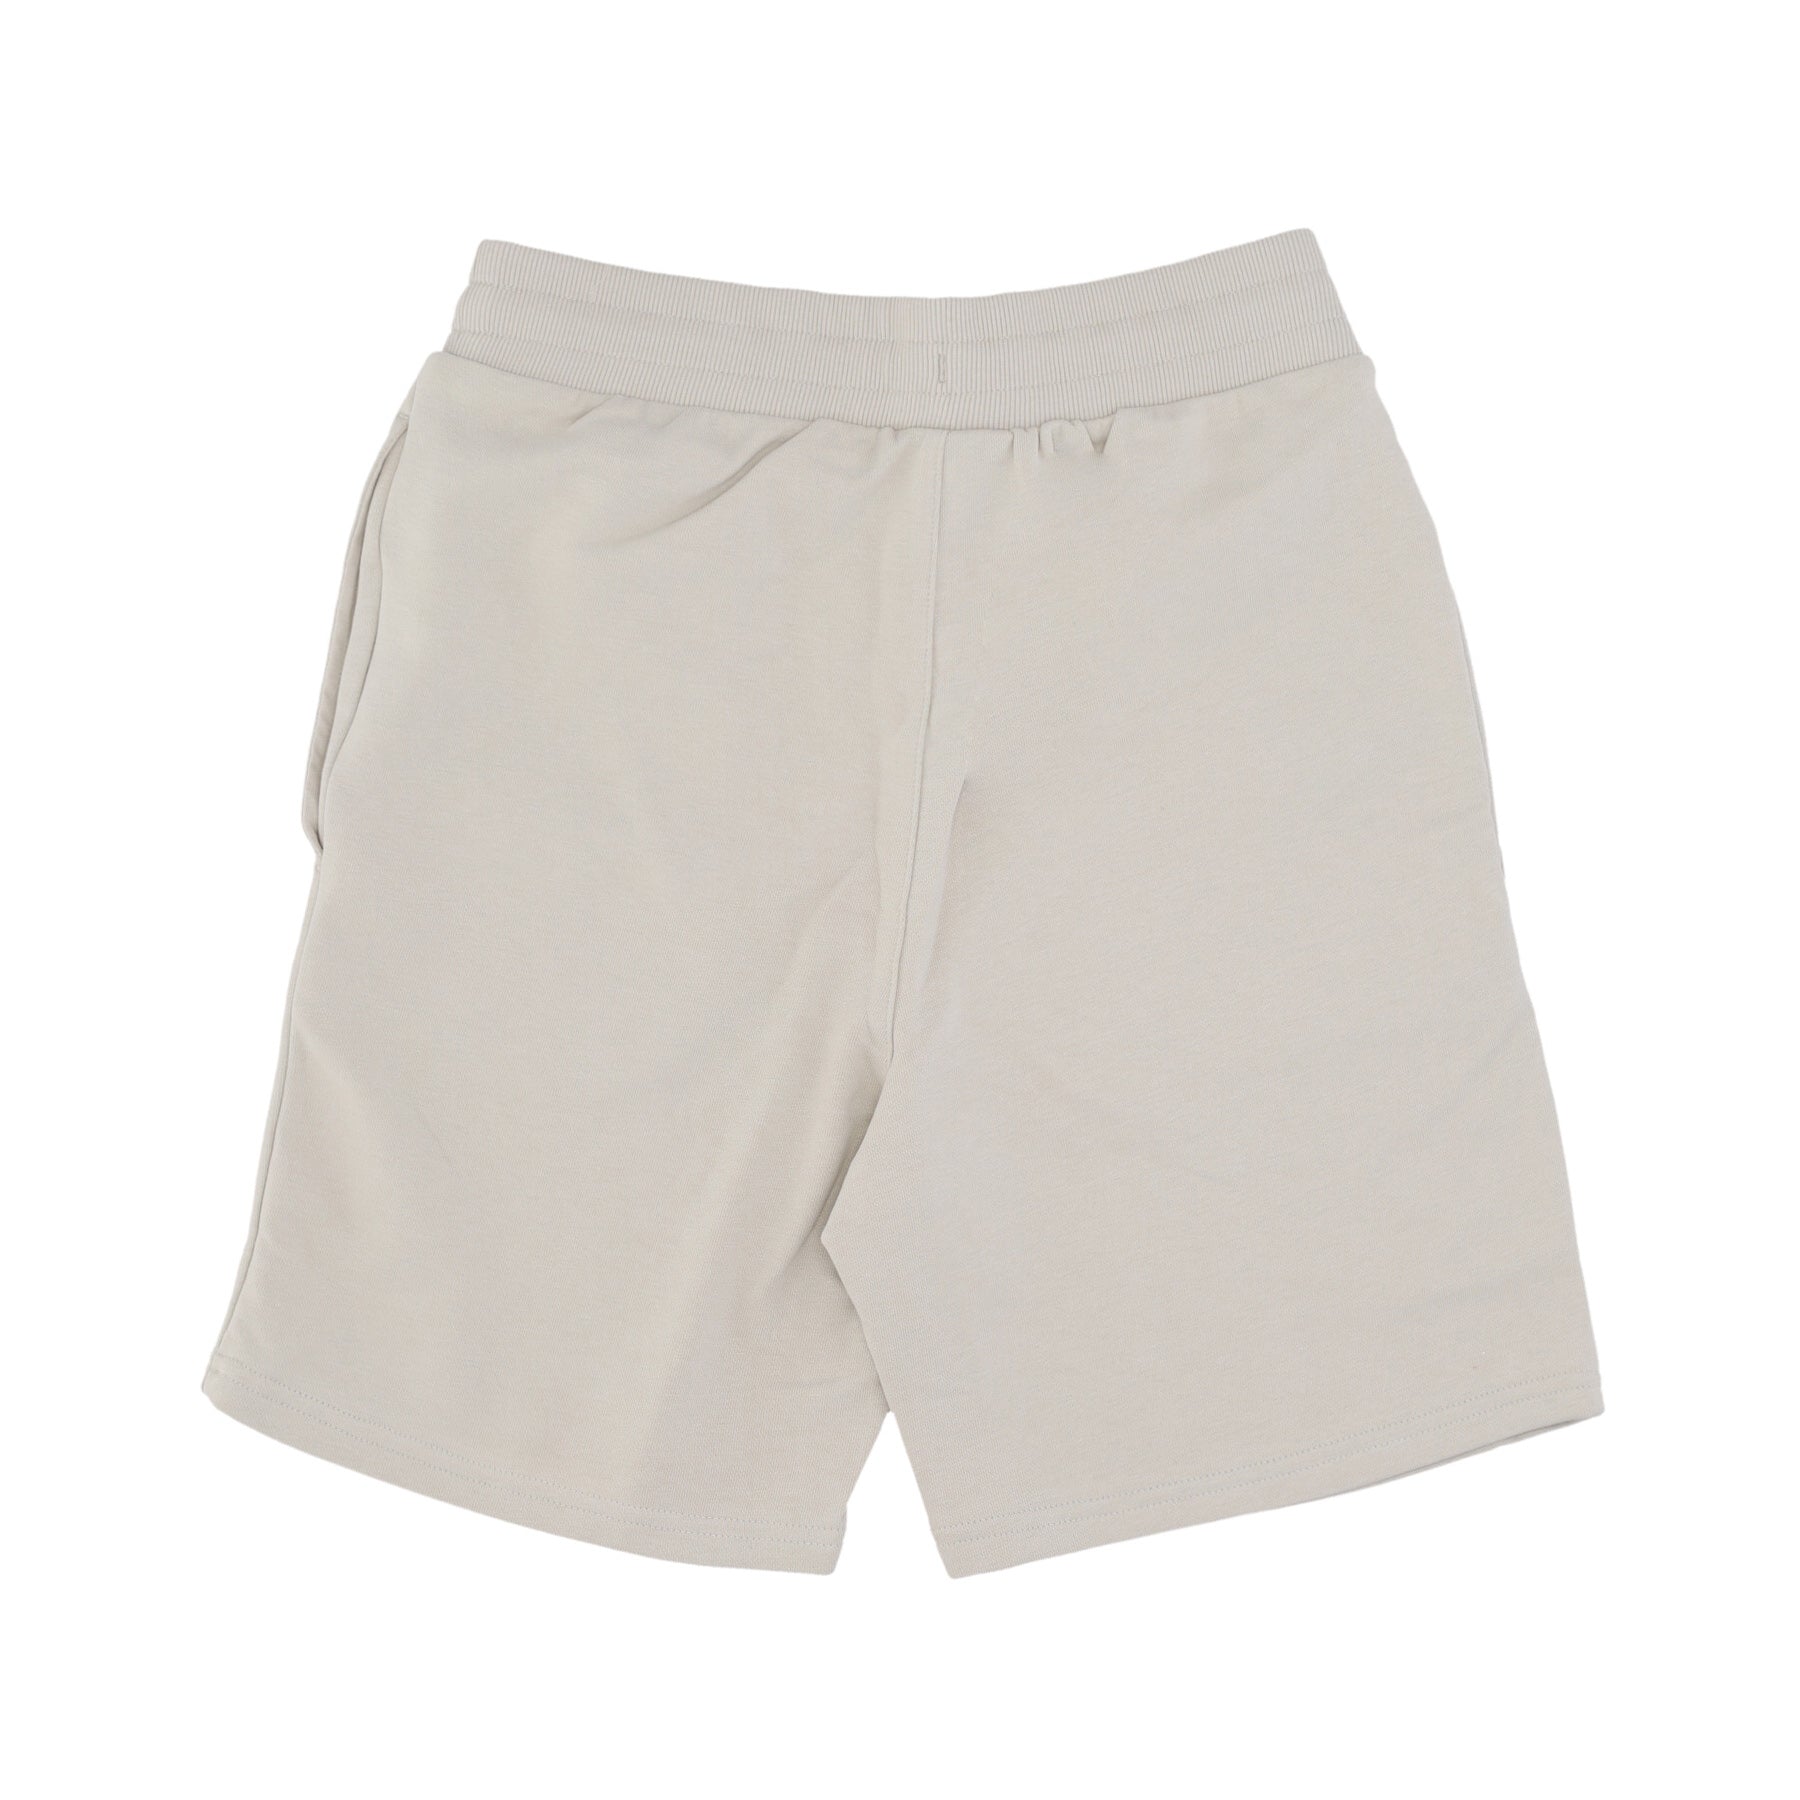 Pantalone Corto Tuta Uomo Mlb League Essentials Shorts Losdod Stone/earth Brown 60435548